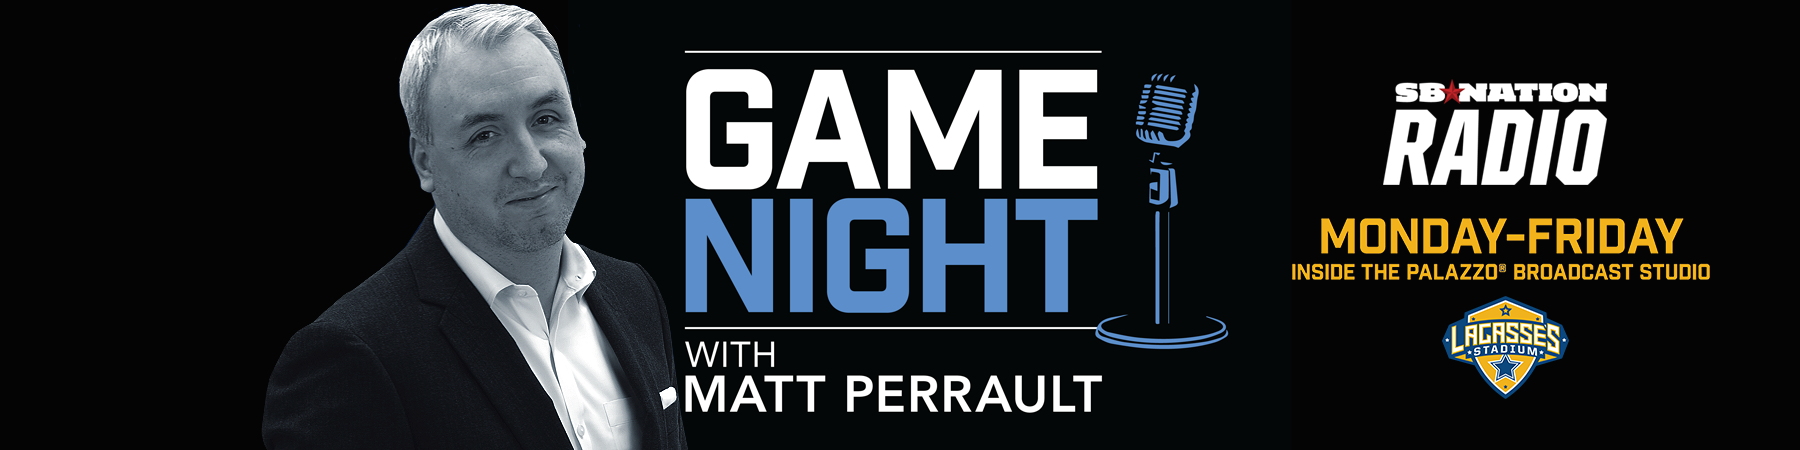 Game Night with Matt Perrault